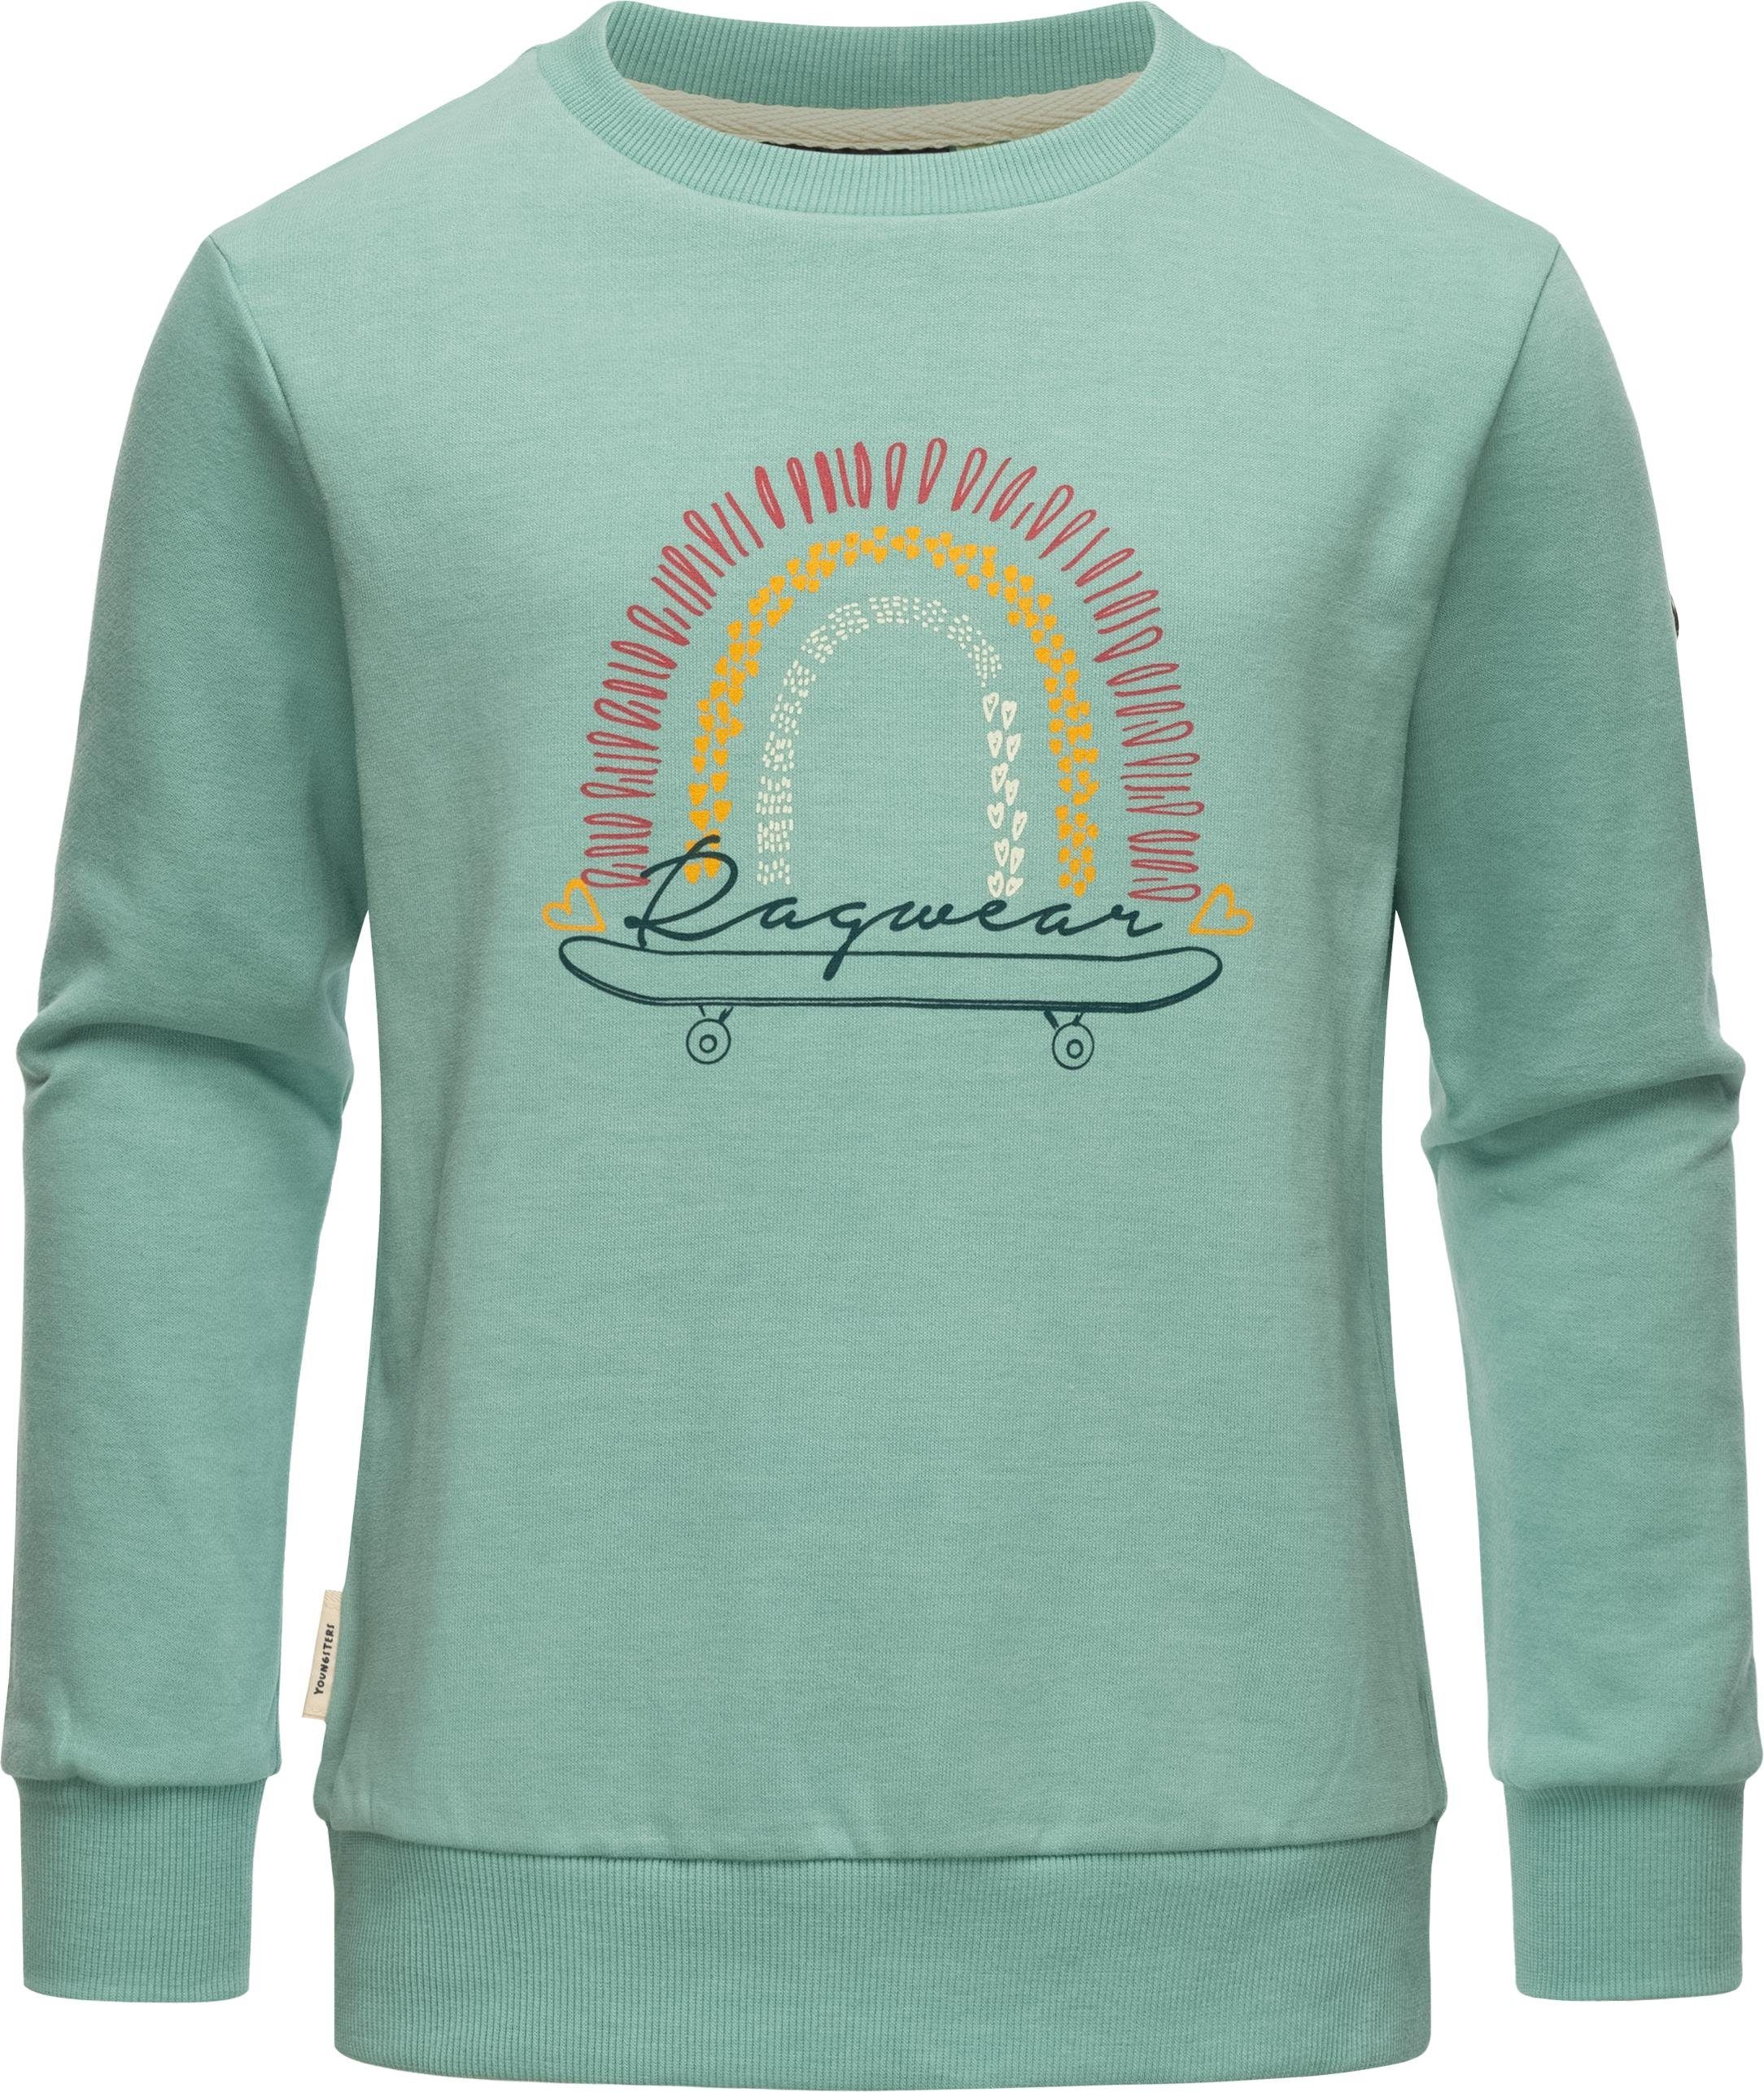 Sweatshirt Sweater Organic Evka Ragwear stylisches Mädchen Print mit blau coolem Print